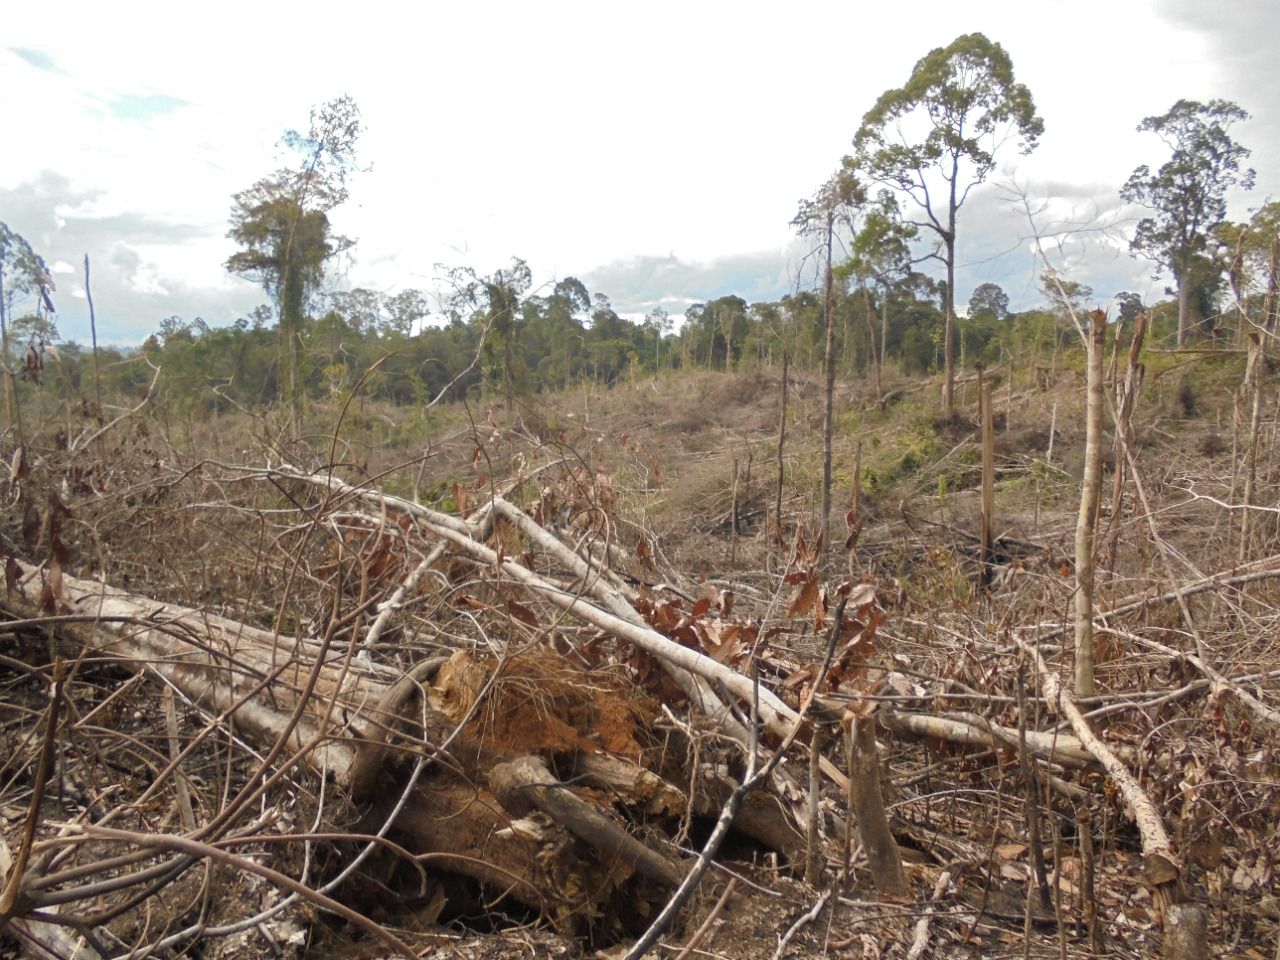  rumah terakhir gajah Sumatera dirambah diduga akan dijadikan kebun sawit/KanopiHijau/